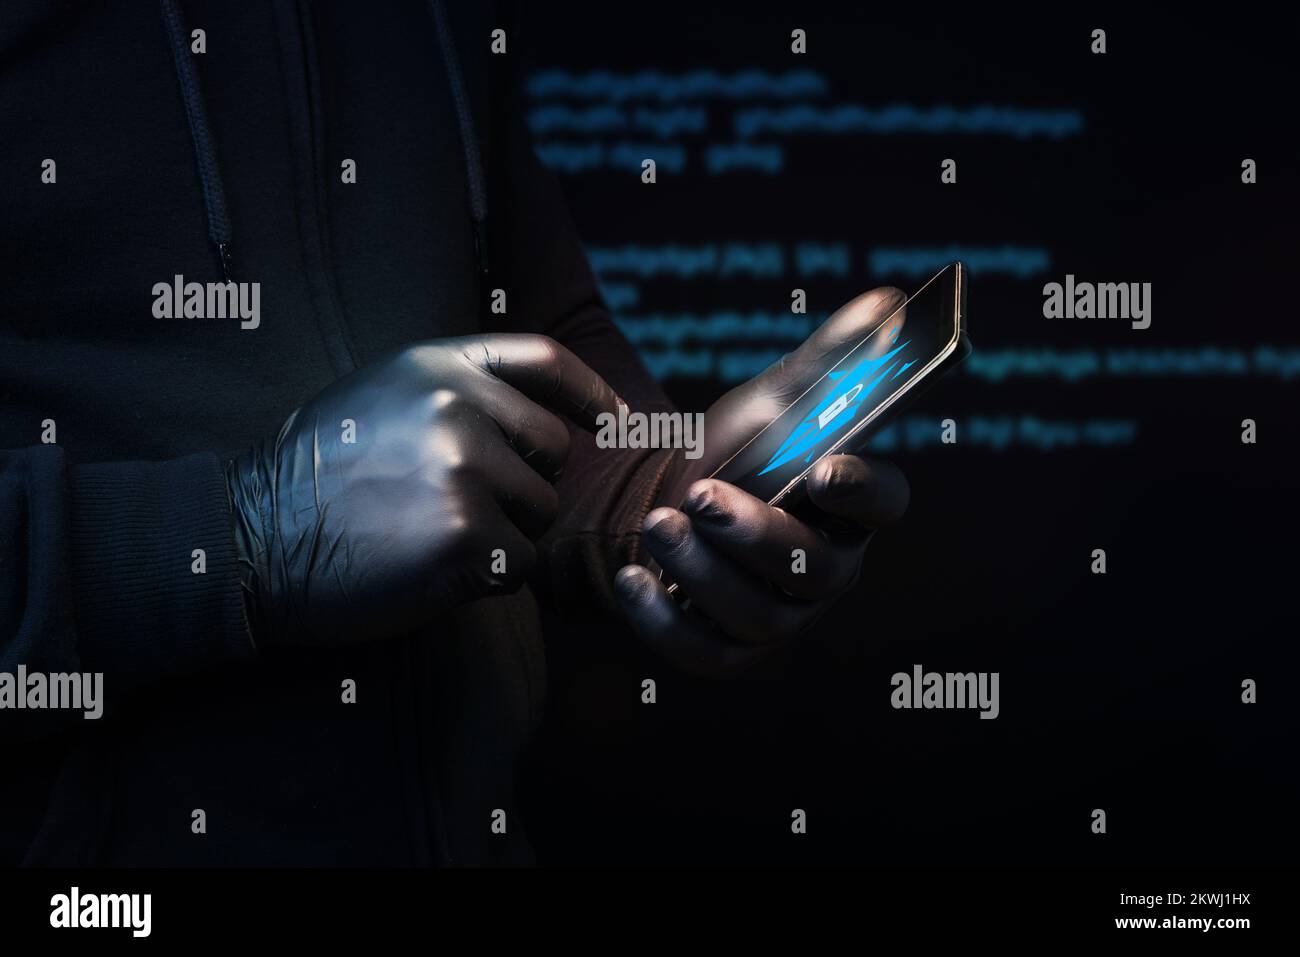 Un cybercriminel qui enfreint le système de sécurité d'un téléphone cellulaire pour accéder aux données personnelles et bancaires d'un utilisateur. Risque d'hameçonnage Banque D'Images